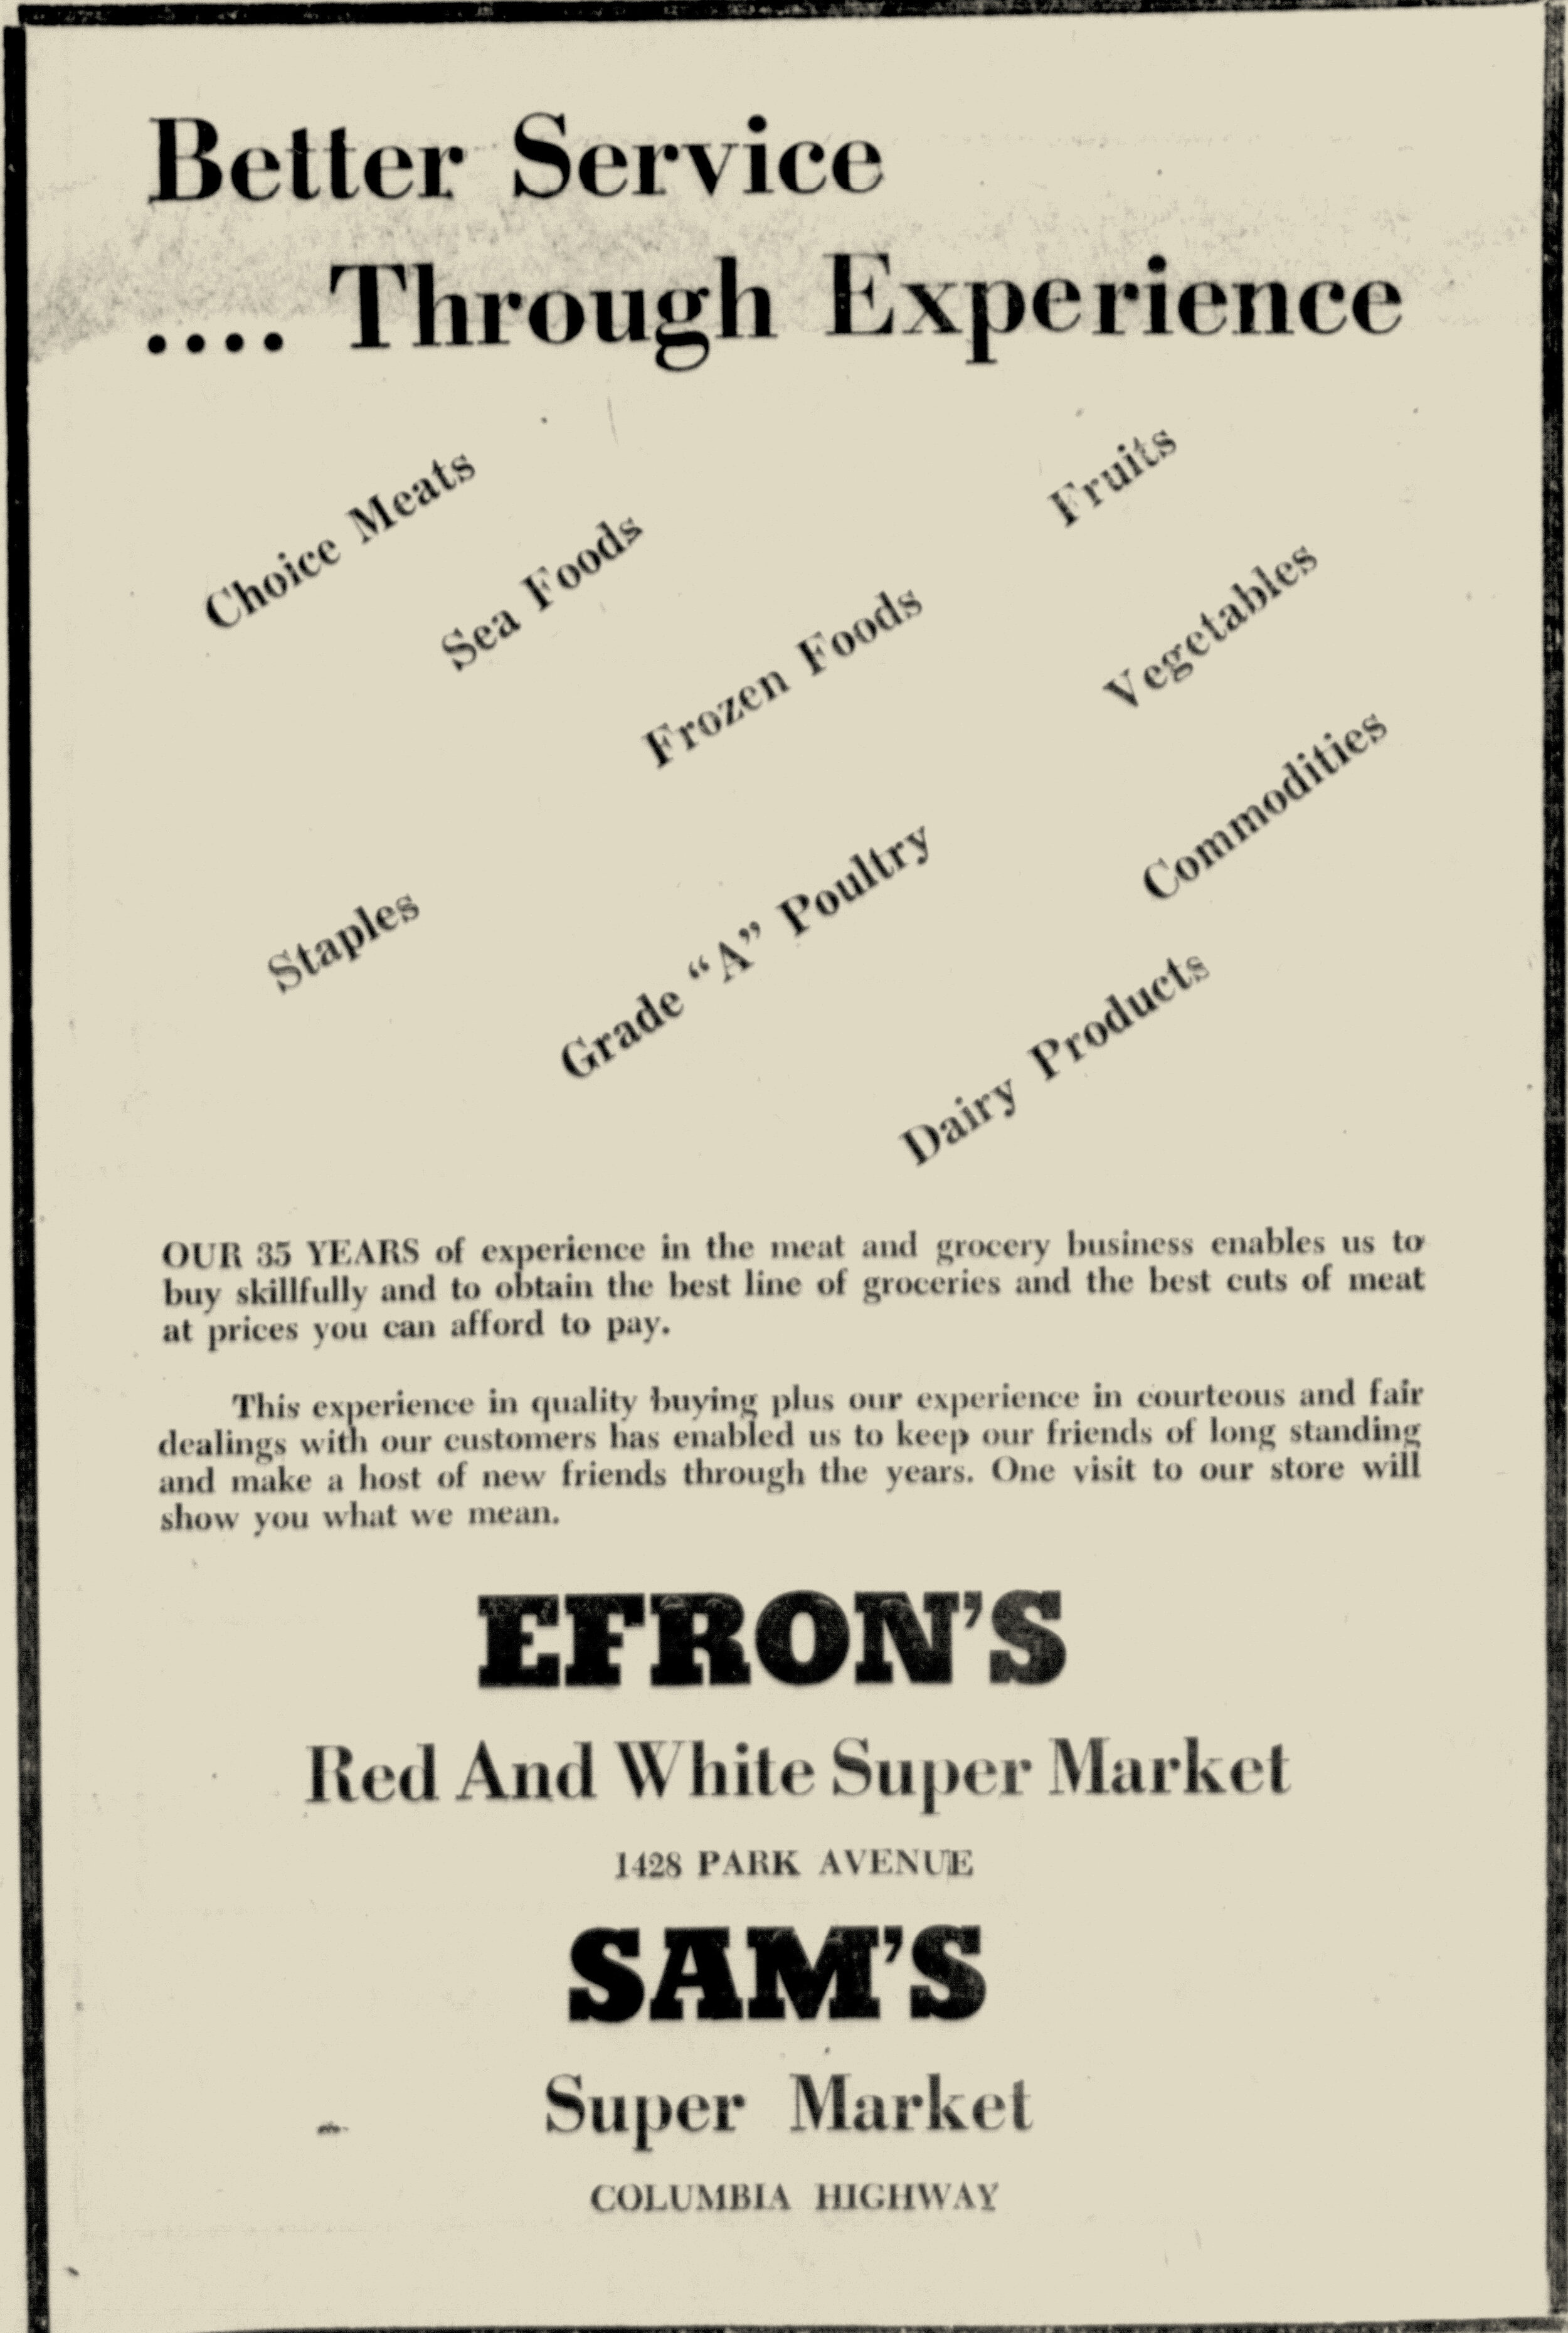 Sams Market, Aiken Standard & Review, 10-1-1956.jpg